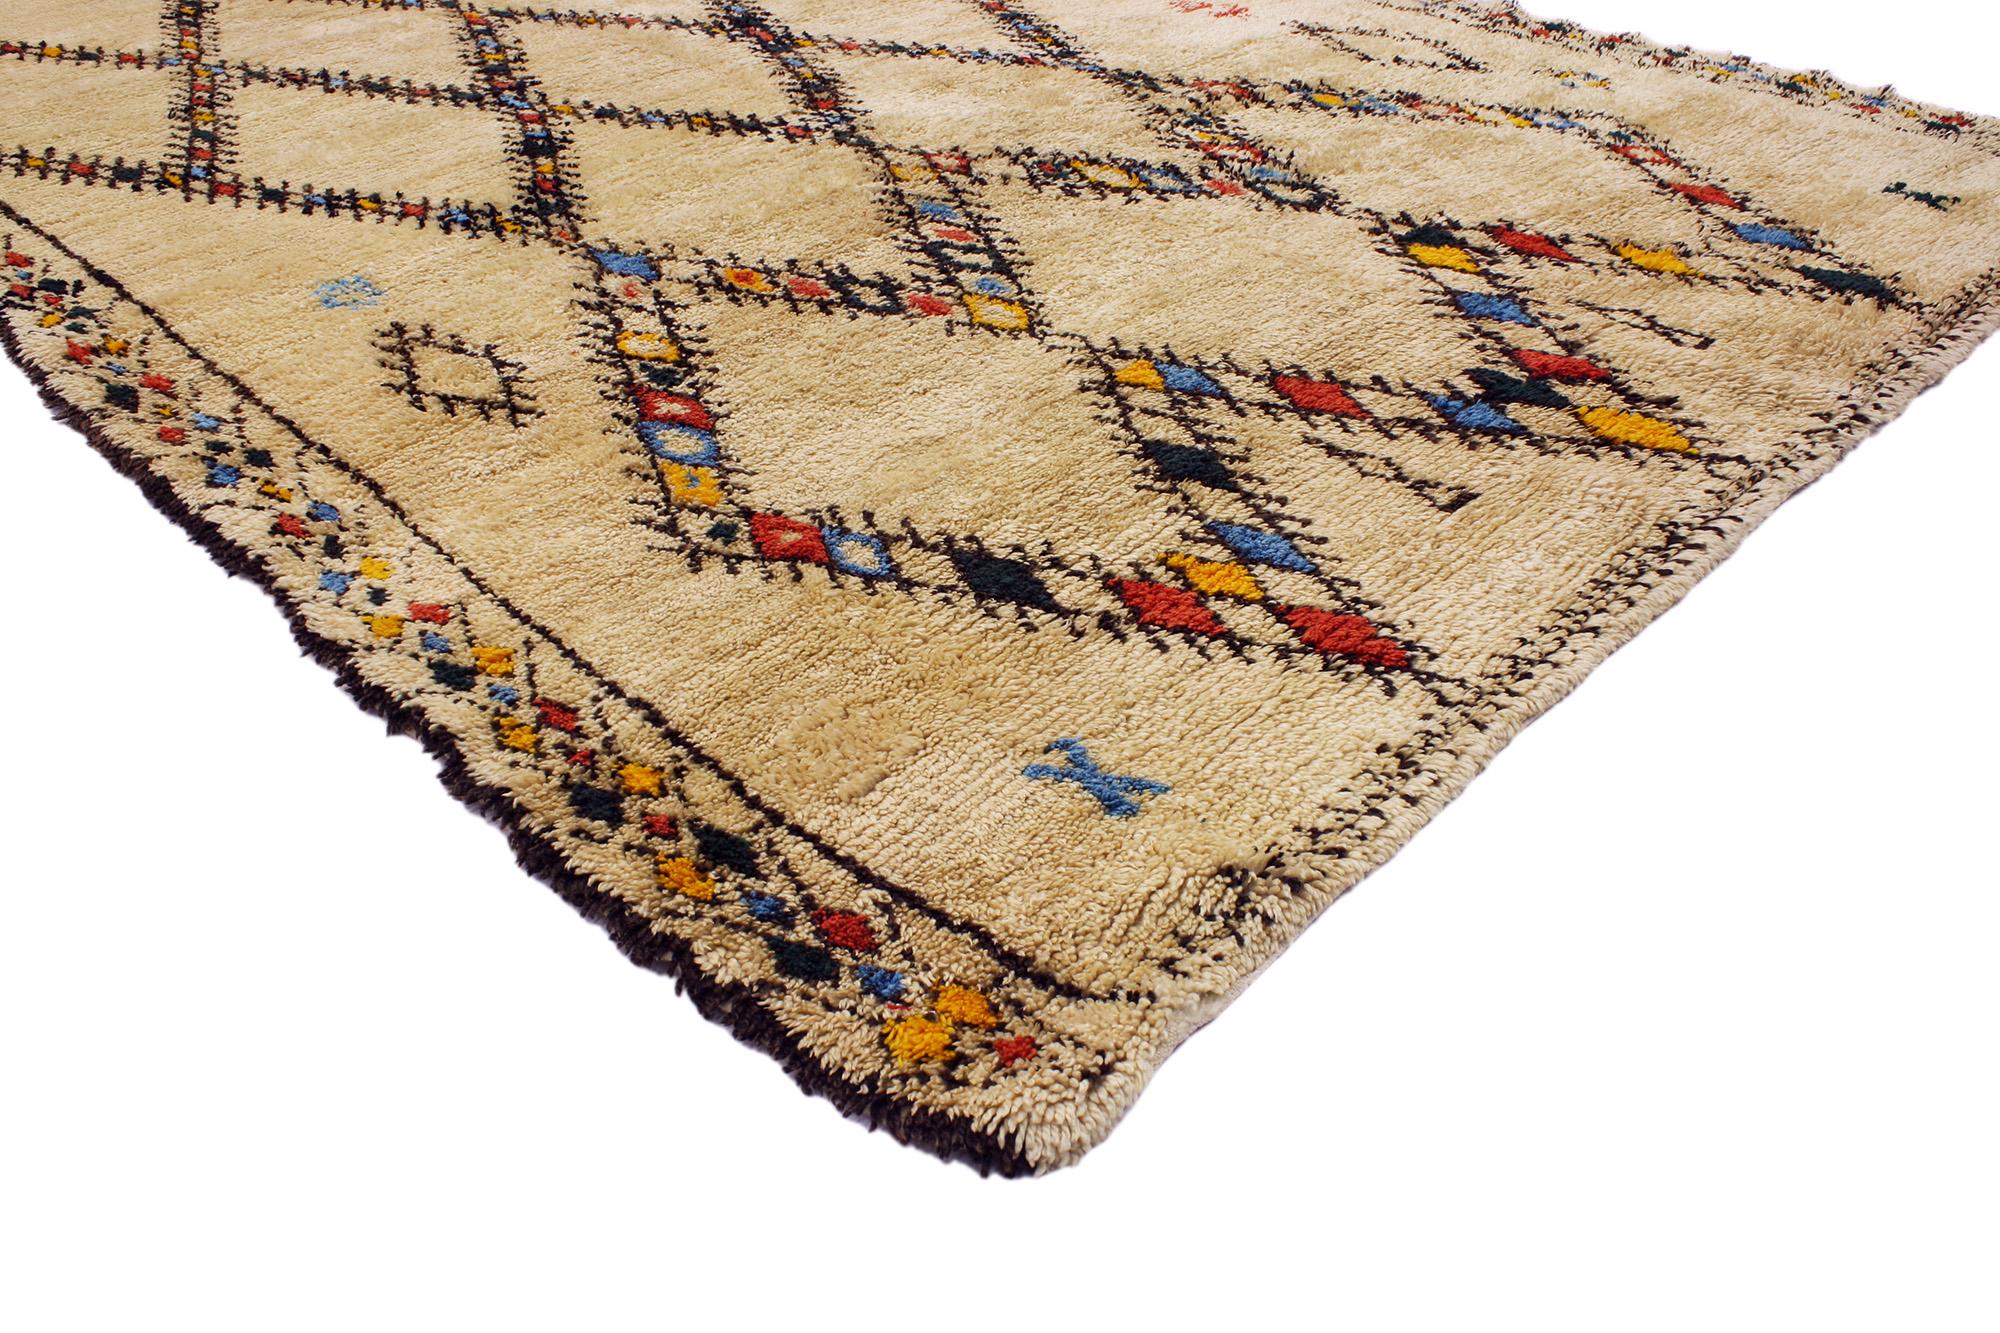 20348 Vintage Beni Ourain Marokkanischer Teppich, 06'07 x 10'00. Diese sorgfältig gefertigten Teppiche stammen vom geschätzten Beni Ourain-Stamm in Marokko und ehren die Tradition mit akribischer Handwerkskunst. Sie werden aus unbehandelter